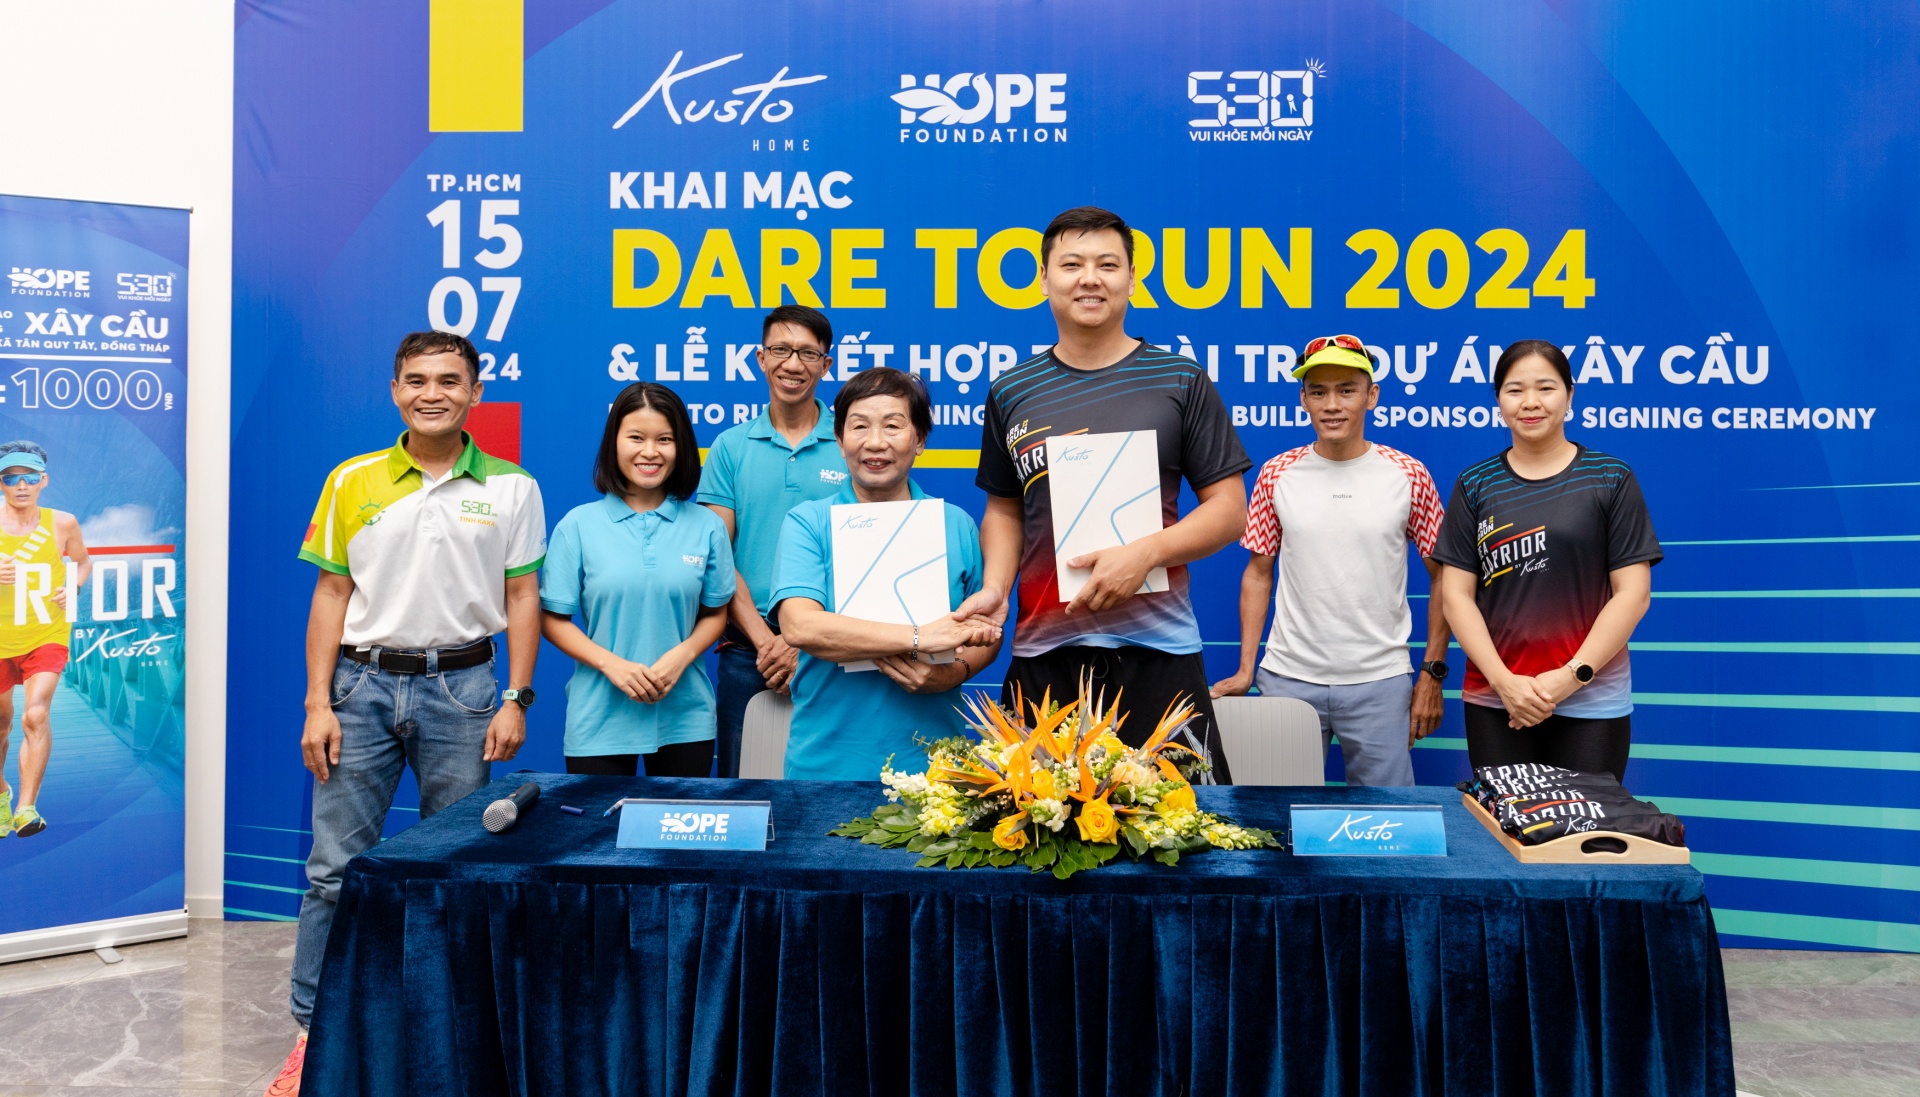 Cross-Vietnam ultramarathoner and Dare to Run make history with fundraising